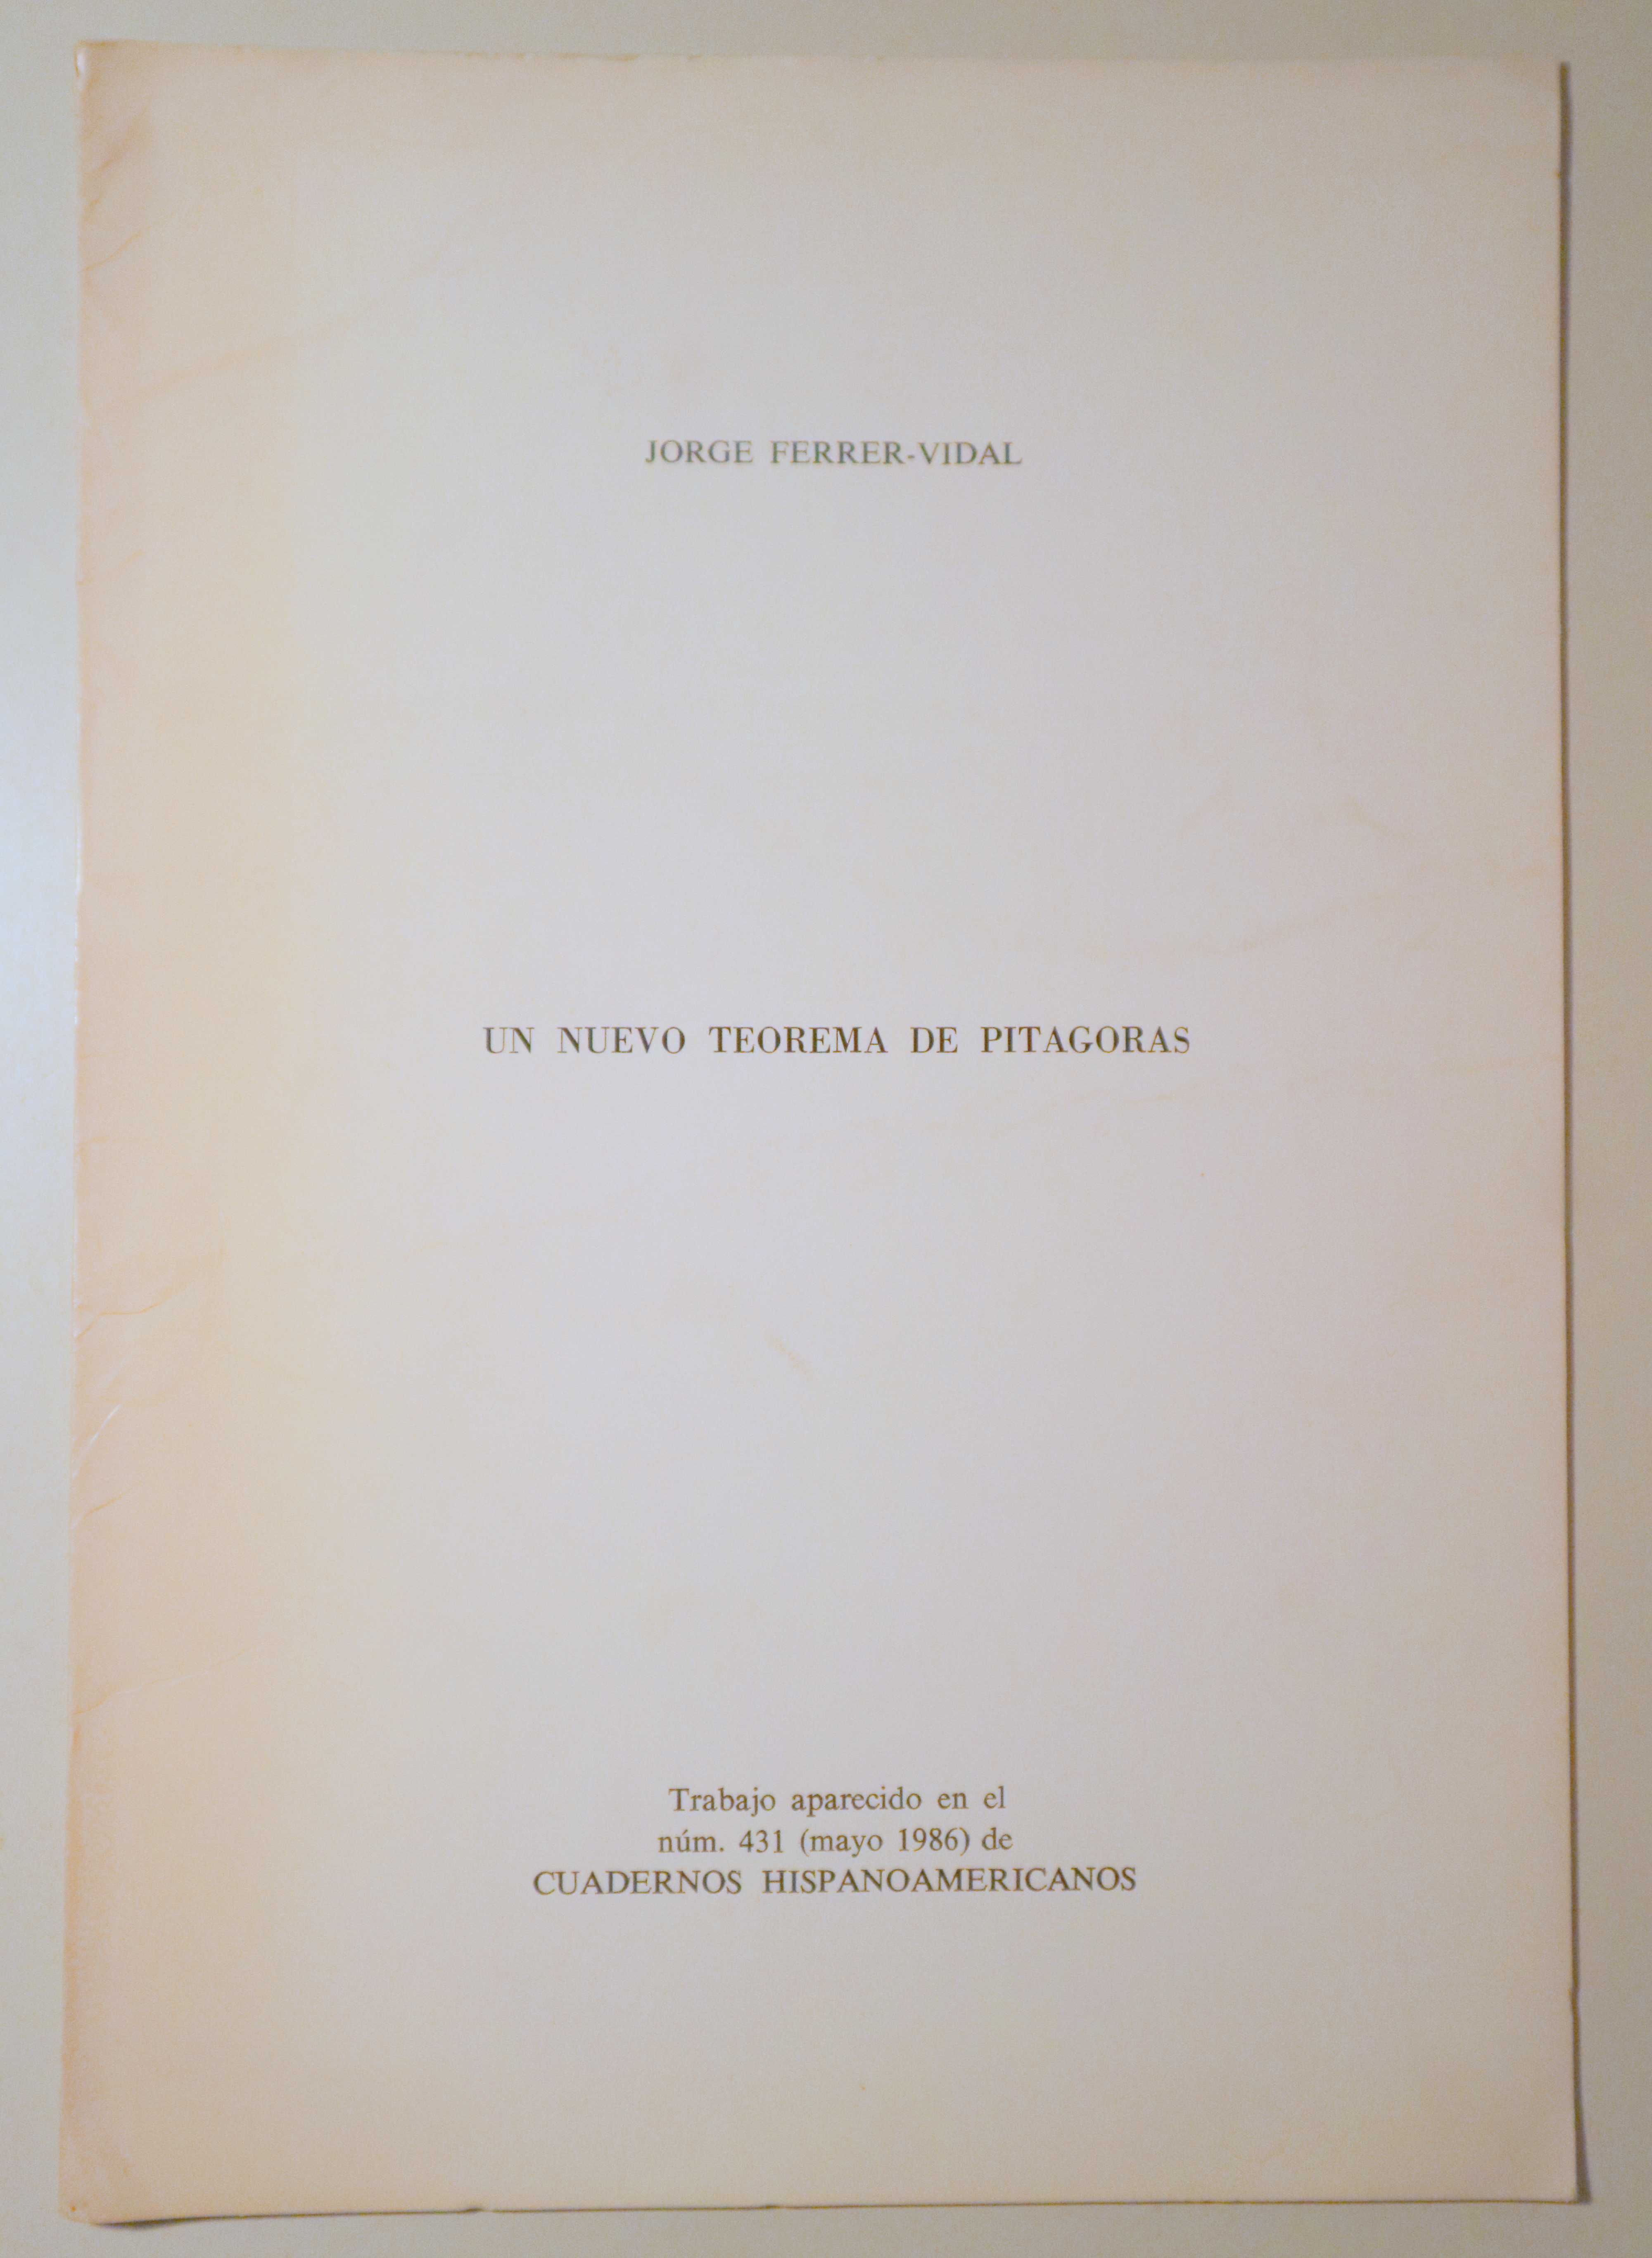 UN NUEVO TEOREMA DE PITÁGORAS. Cuadernos Hispano-Americanos Núm. 431 - 1986 - Dedicado